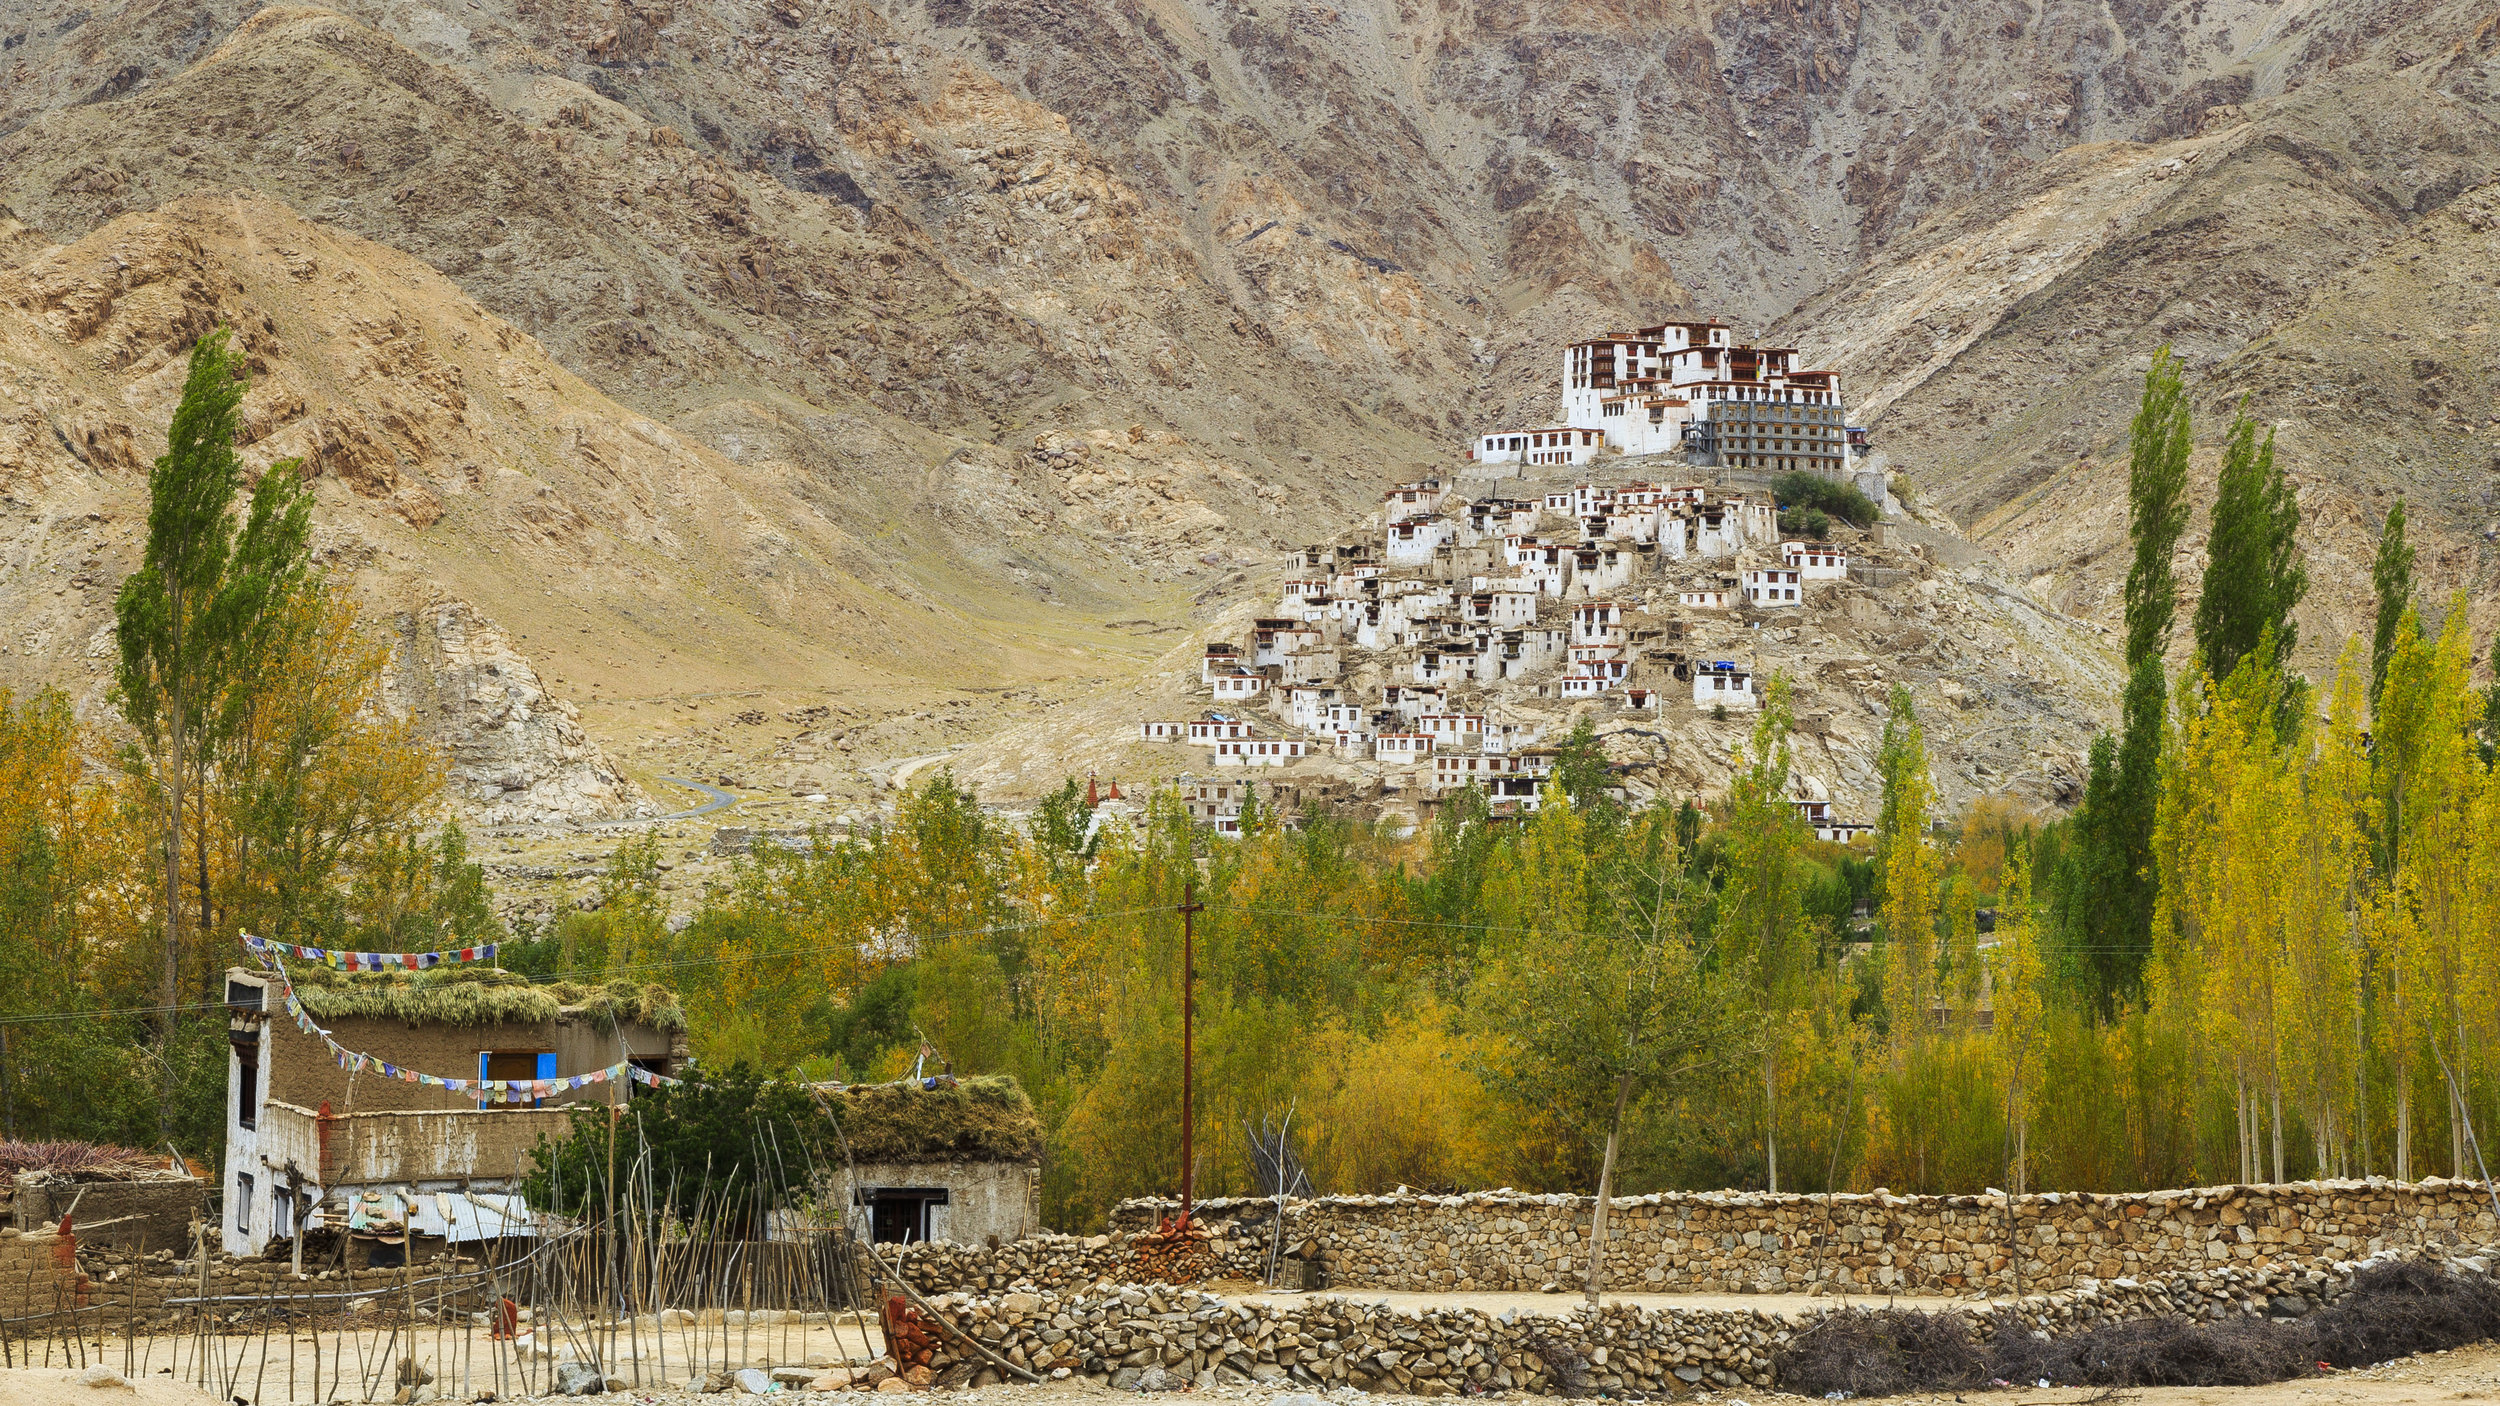 Chemrey Monastery in Ladakh